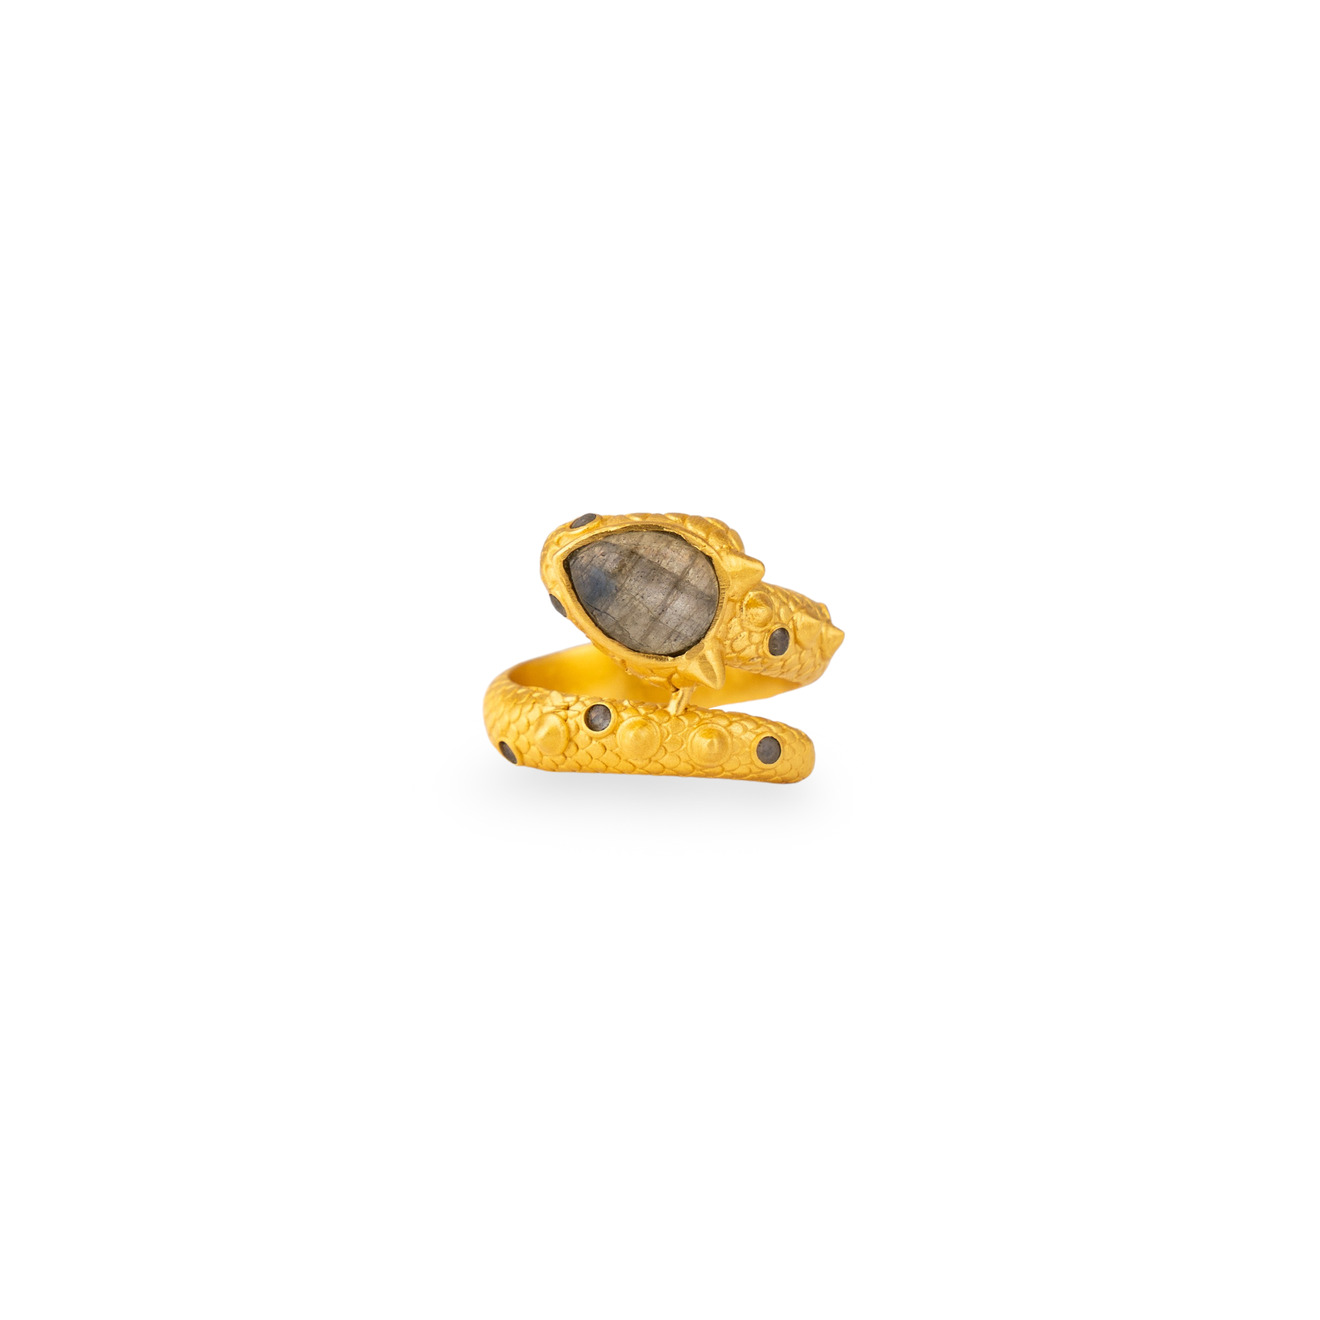 Boheme Покрытое золотом кольцо DRAGON XANADU SHORT с лабрадором цена и фото